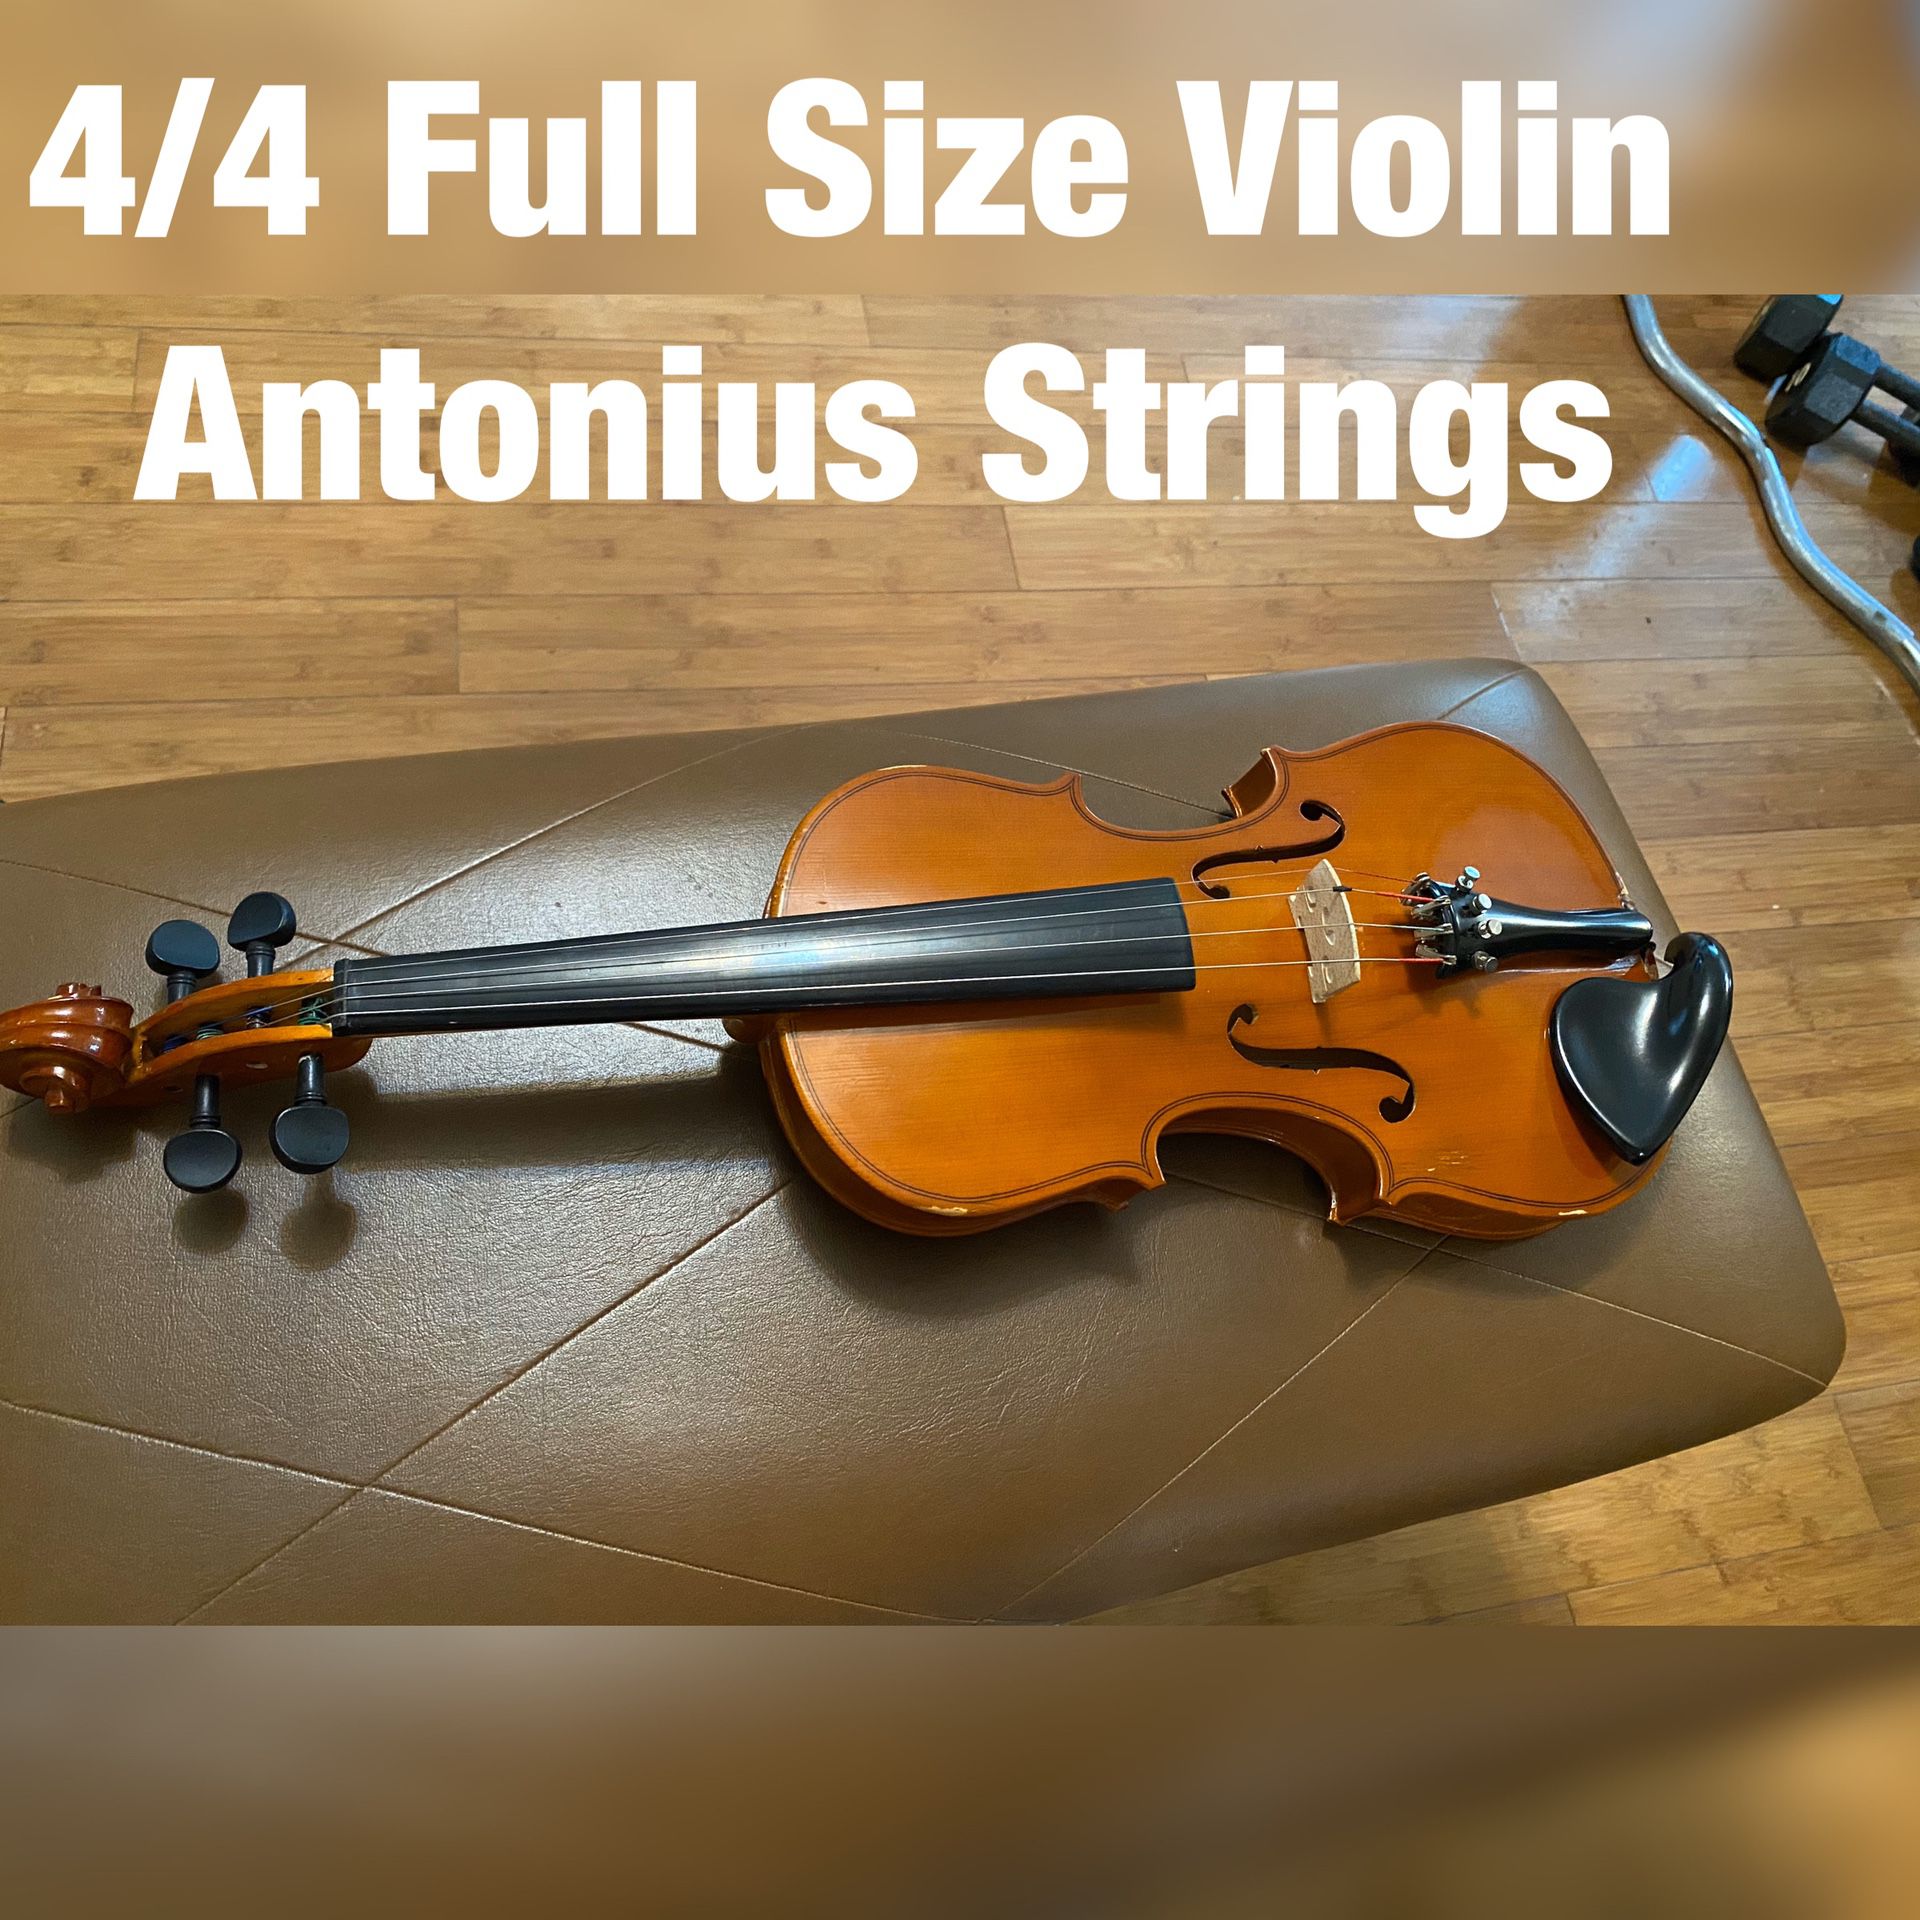 4/4 Full Size Violin Antonius Strings +accessories